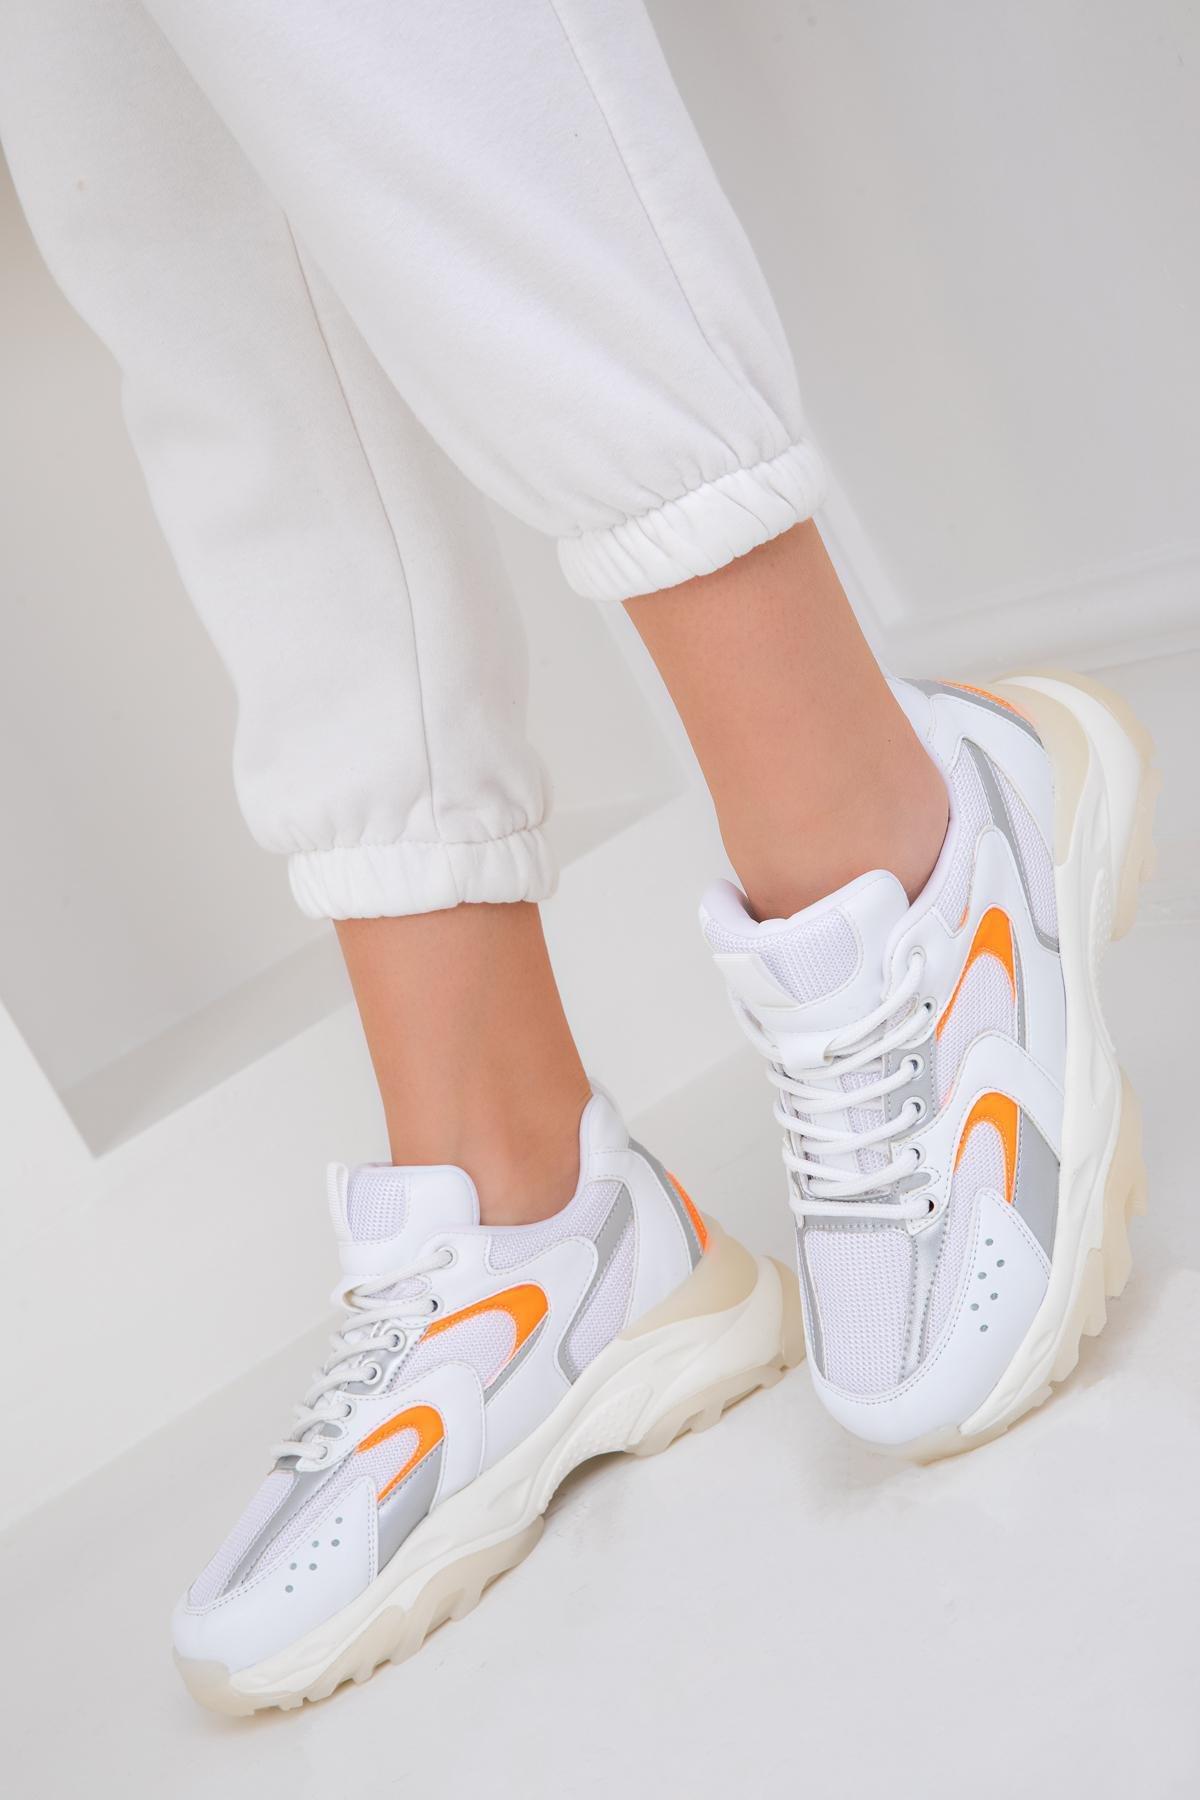 SOHO - White-Silver-Orange Womens Sneakers 18109